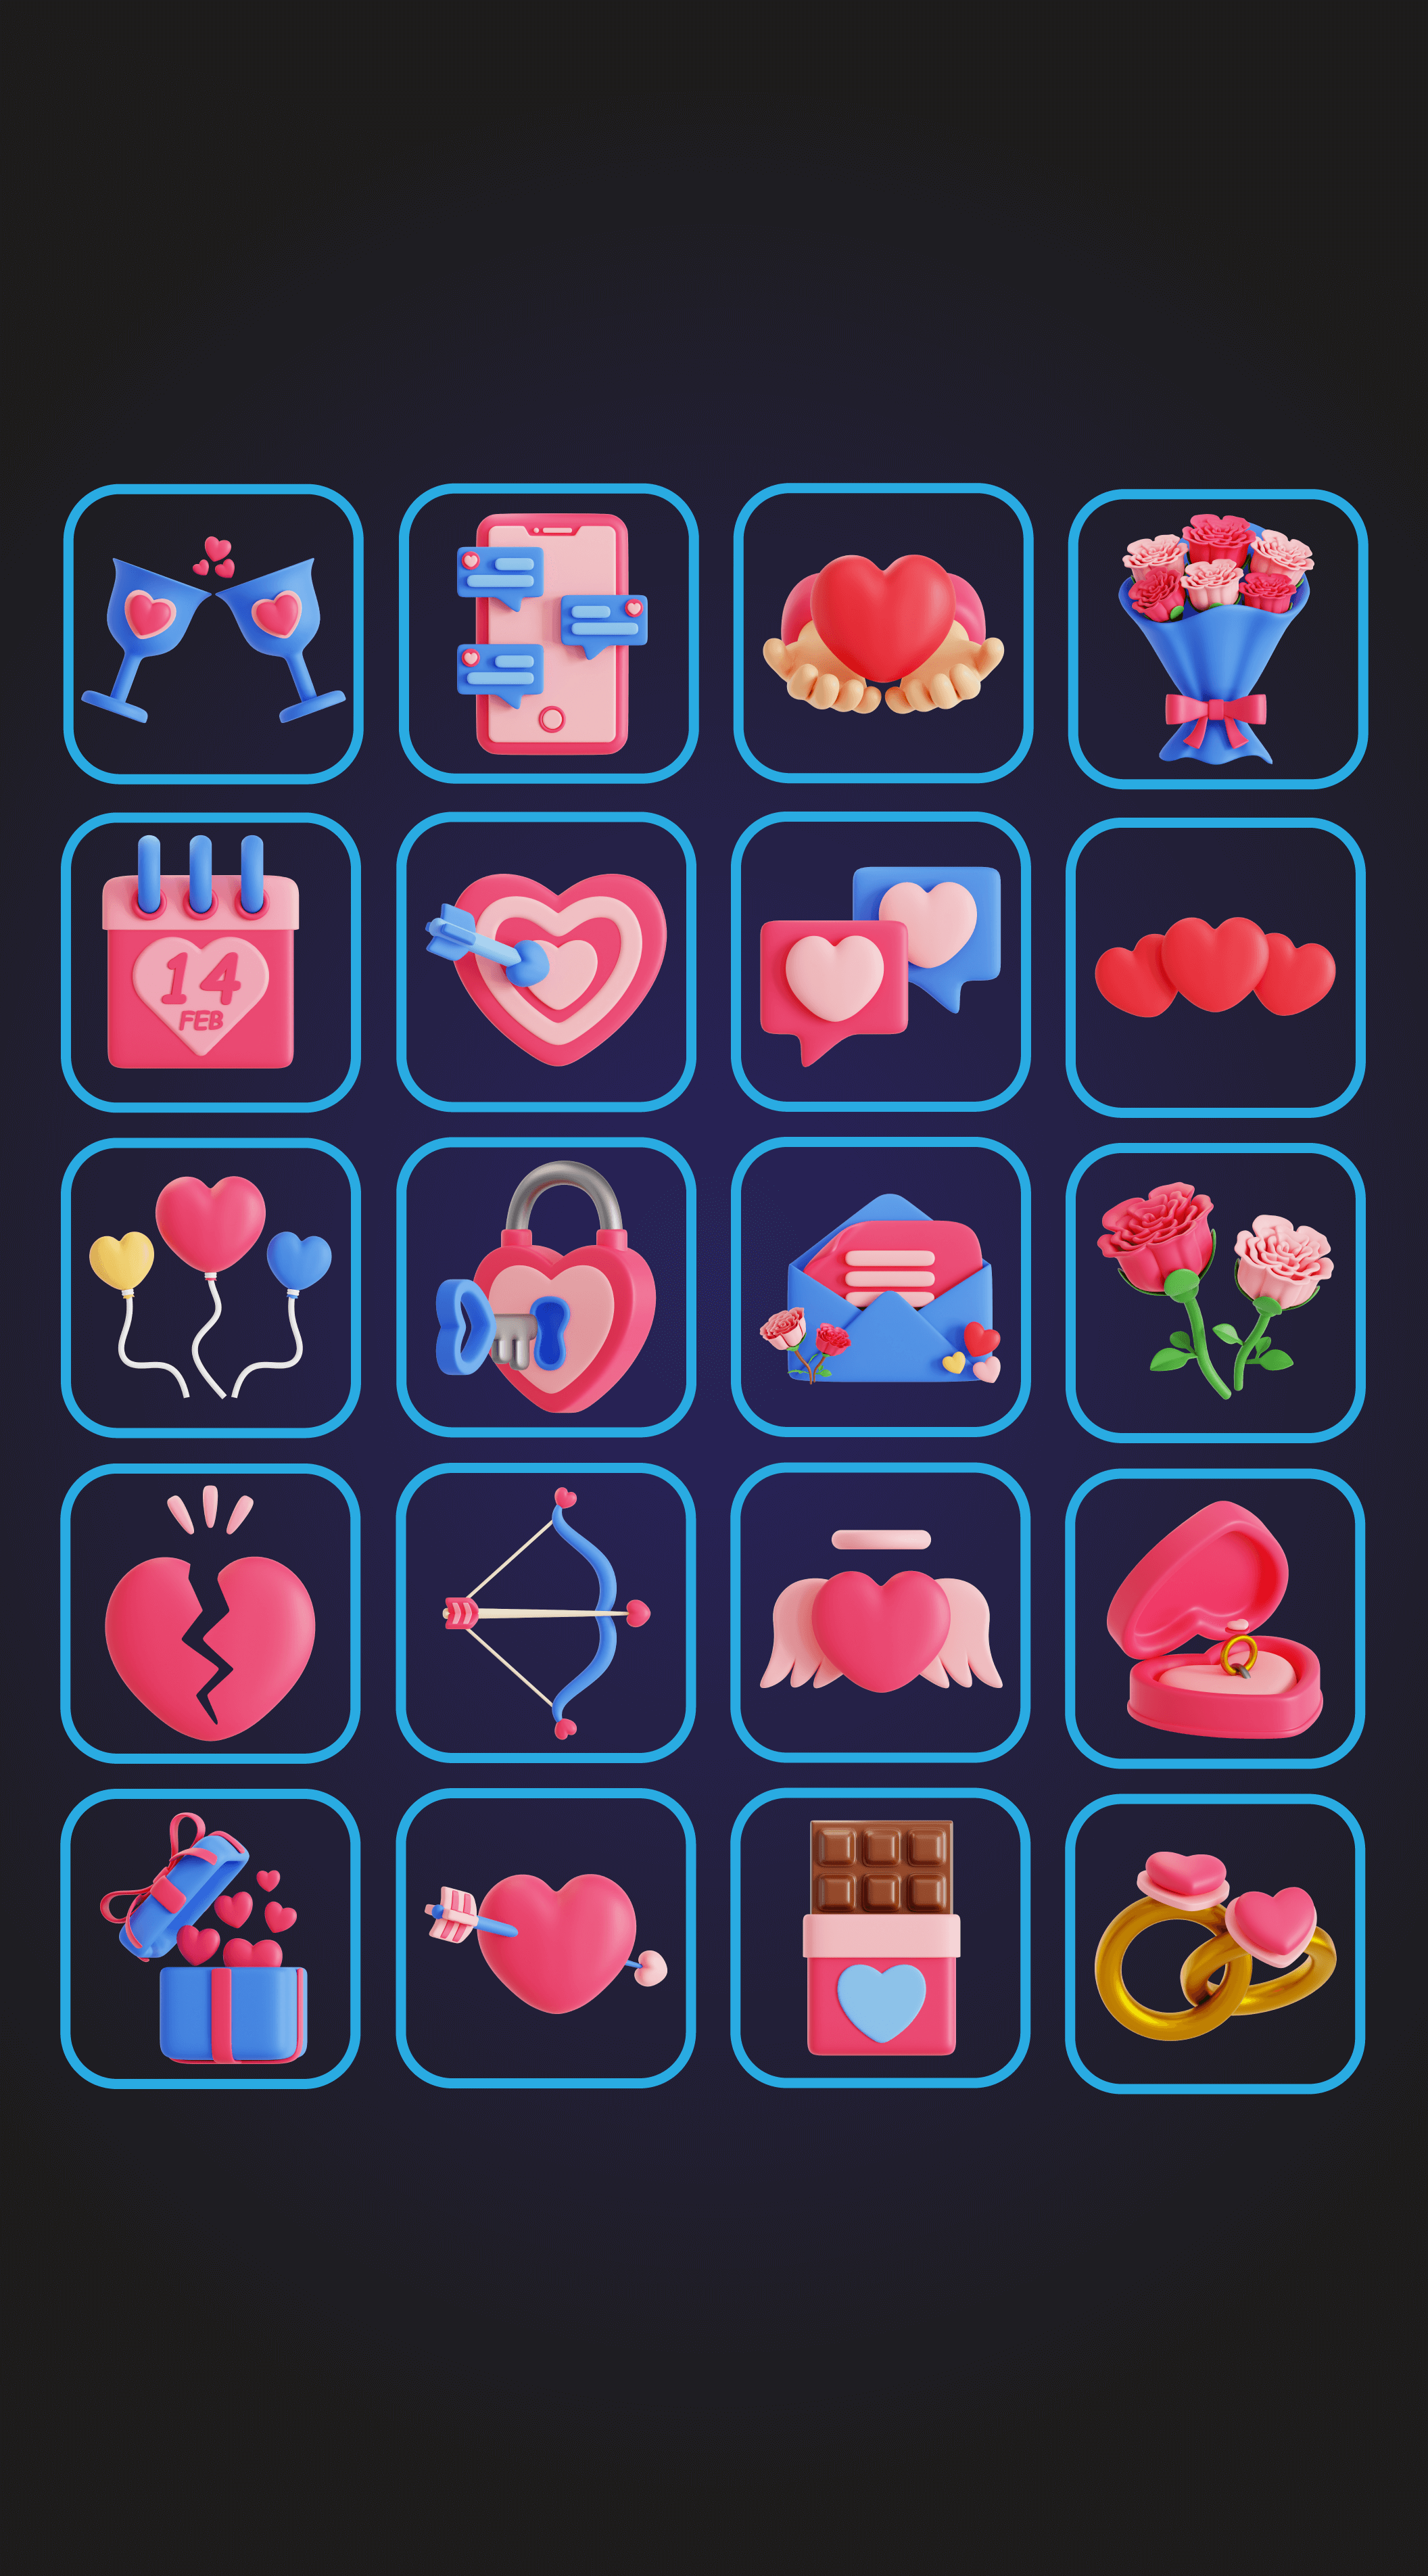 社交情侣App应用模板素材Valentine 3D Icon Pack插图6